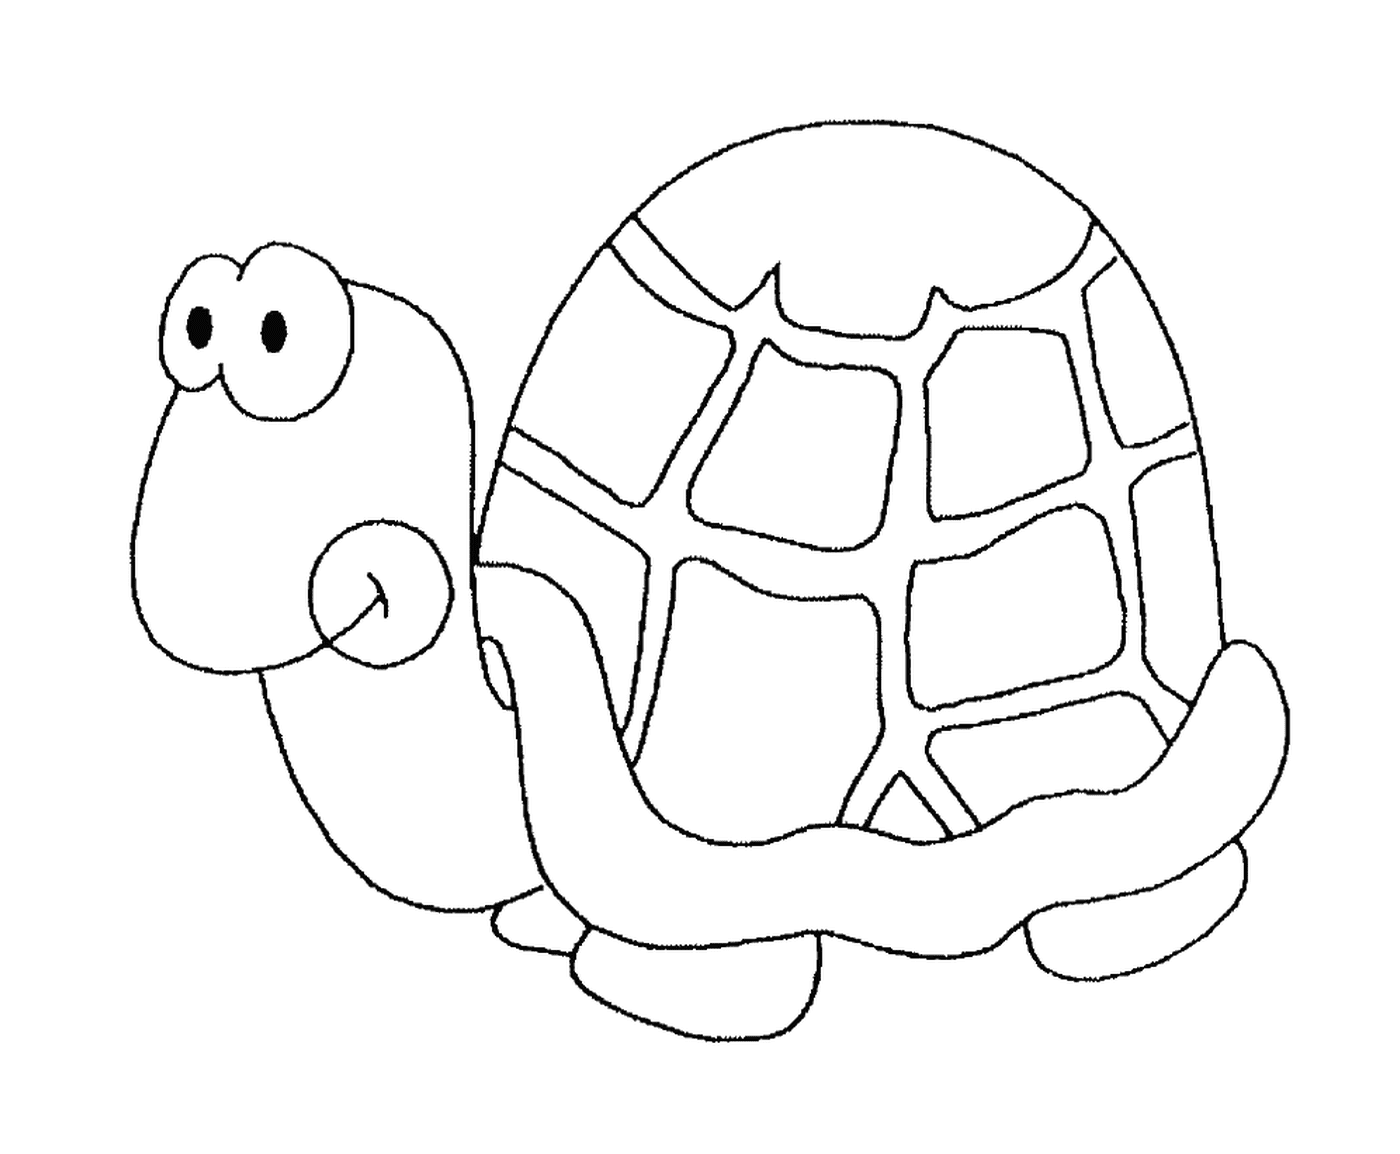   Une tortue avec une carapace ronde 